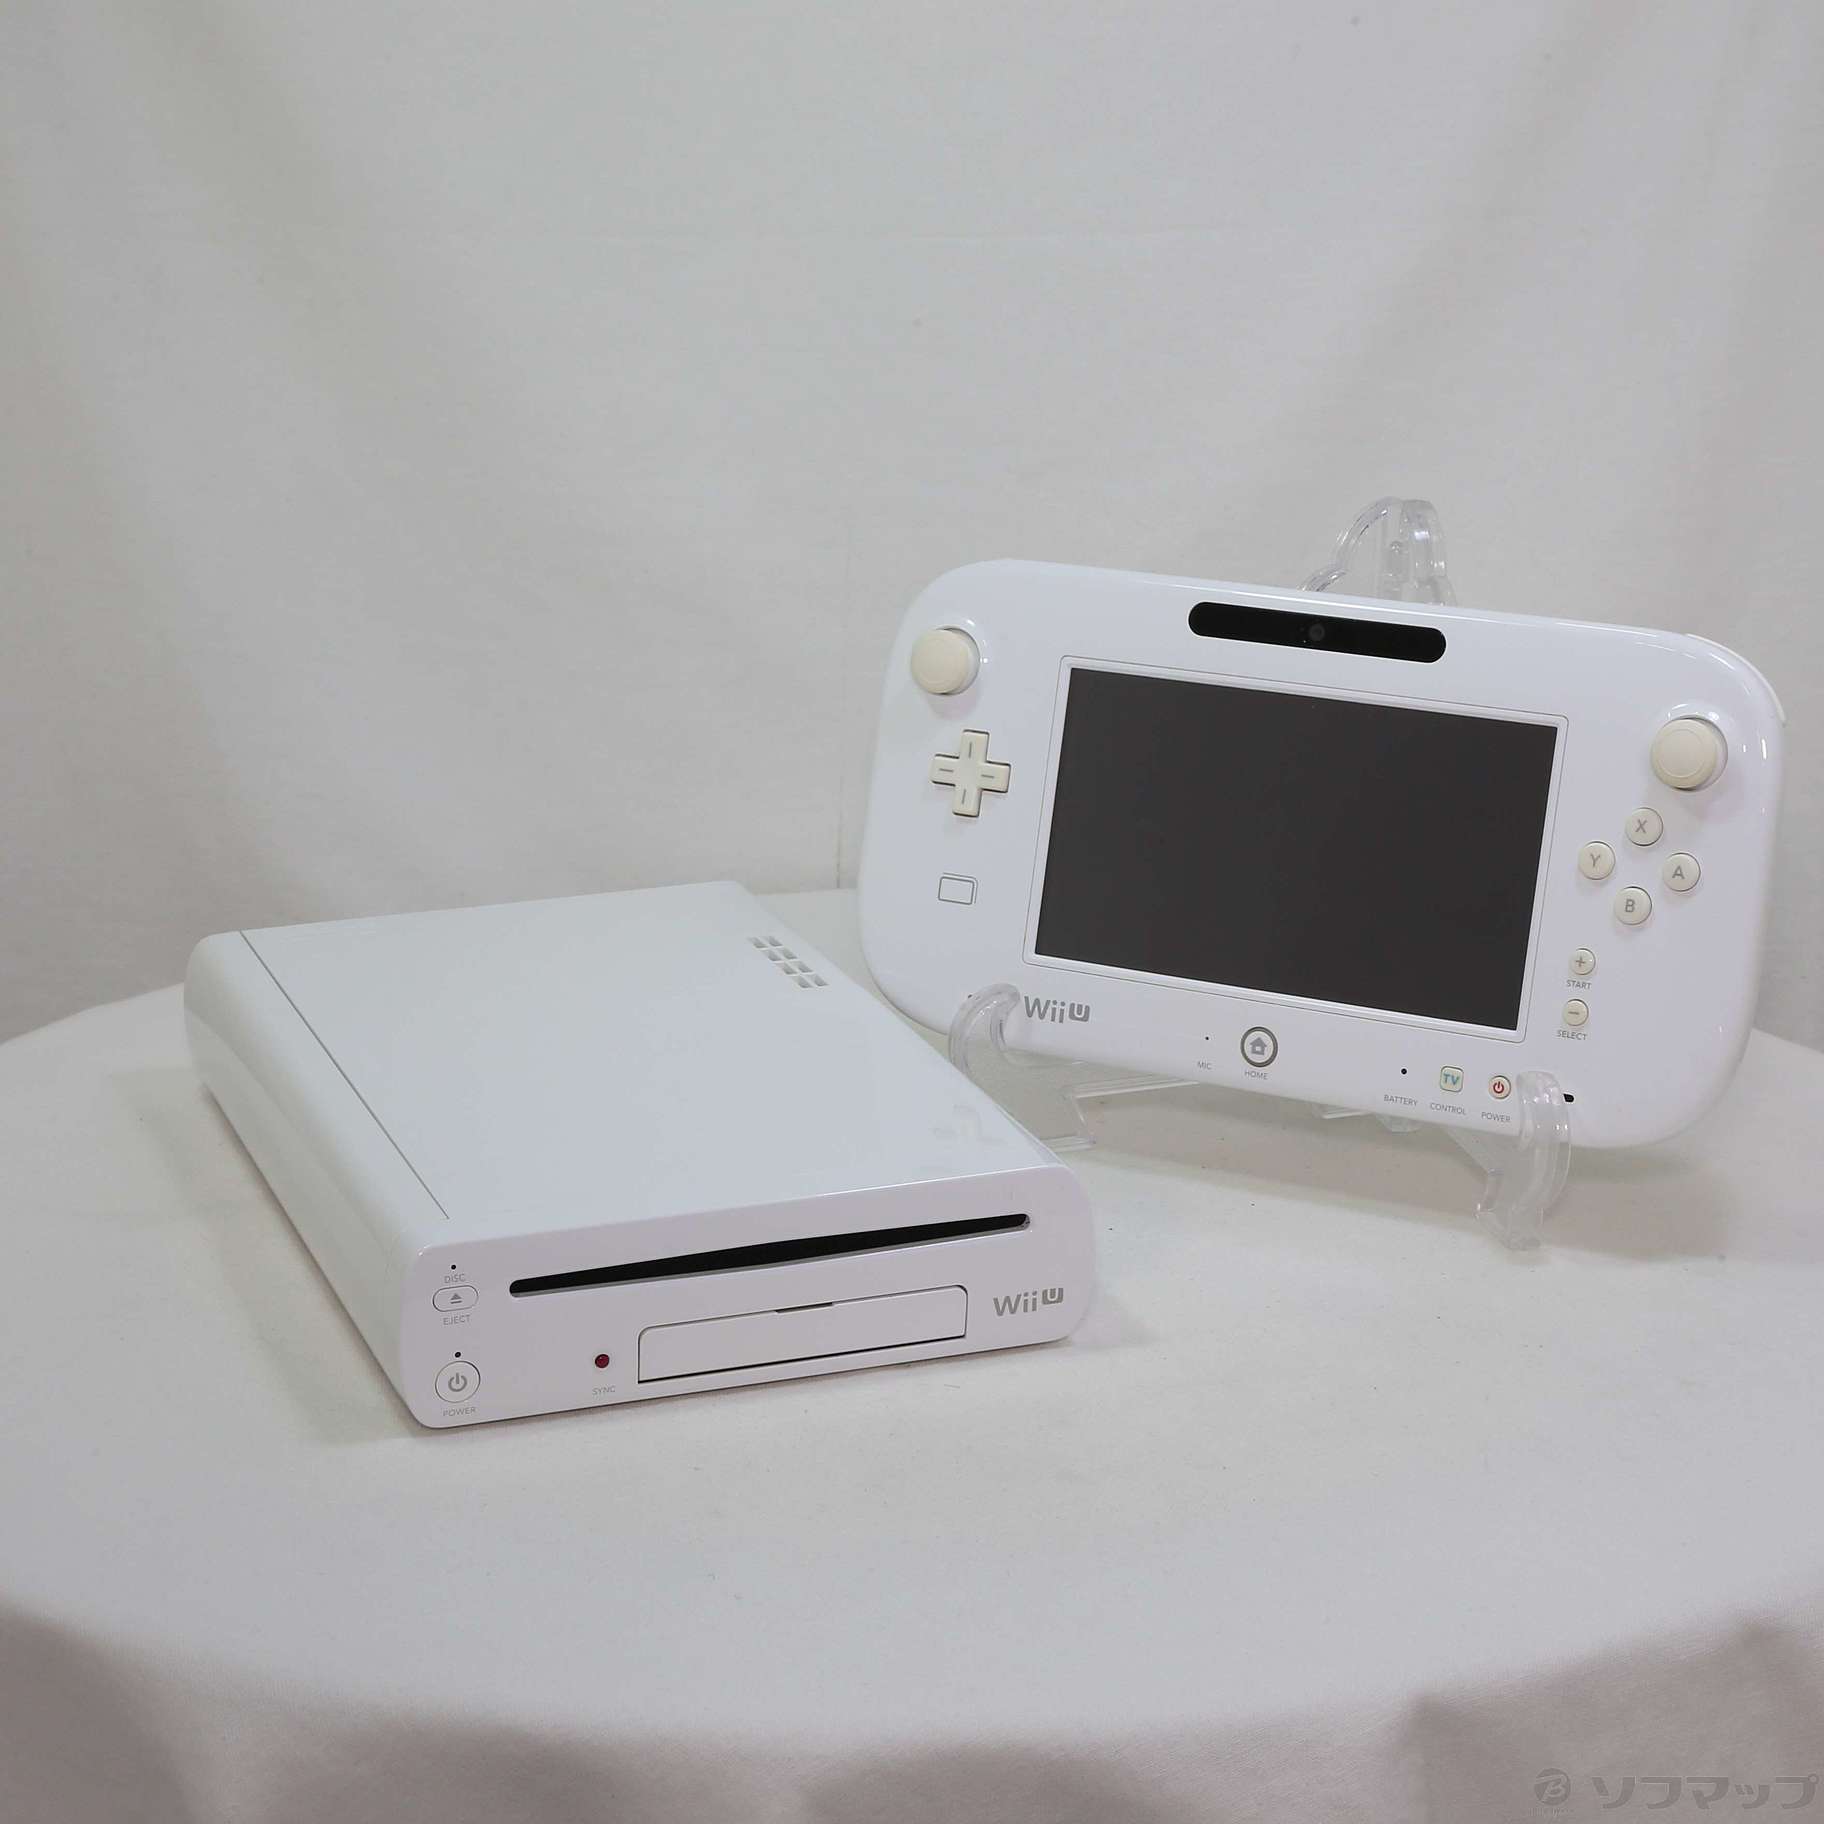 セール対象品 Wii U スーパーマリオメーカーセット WUP-S-WAHA